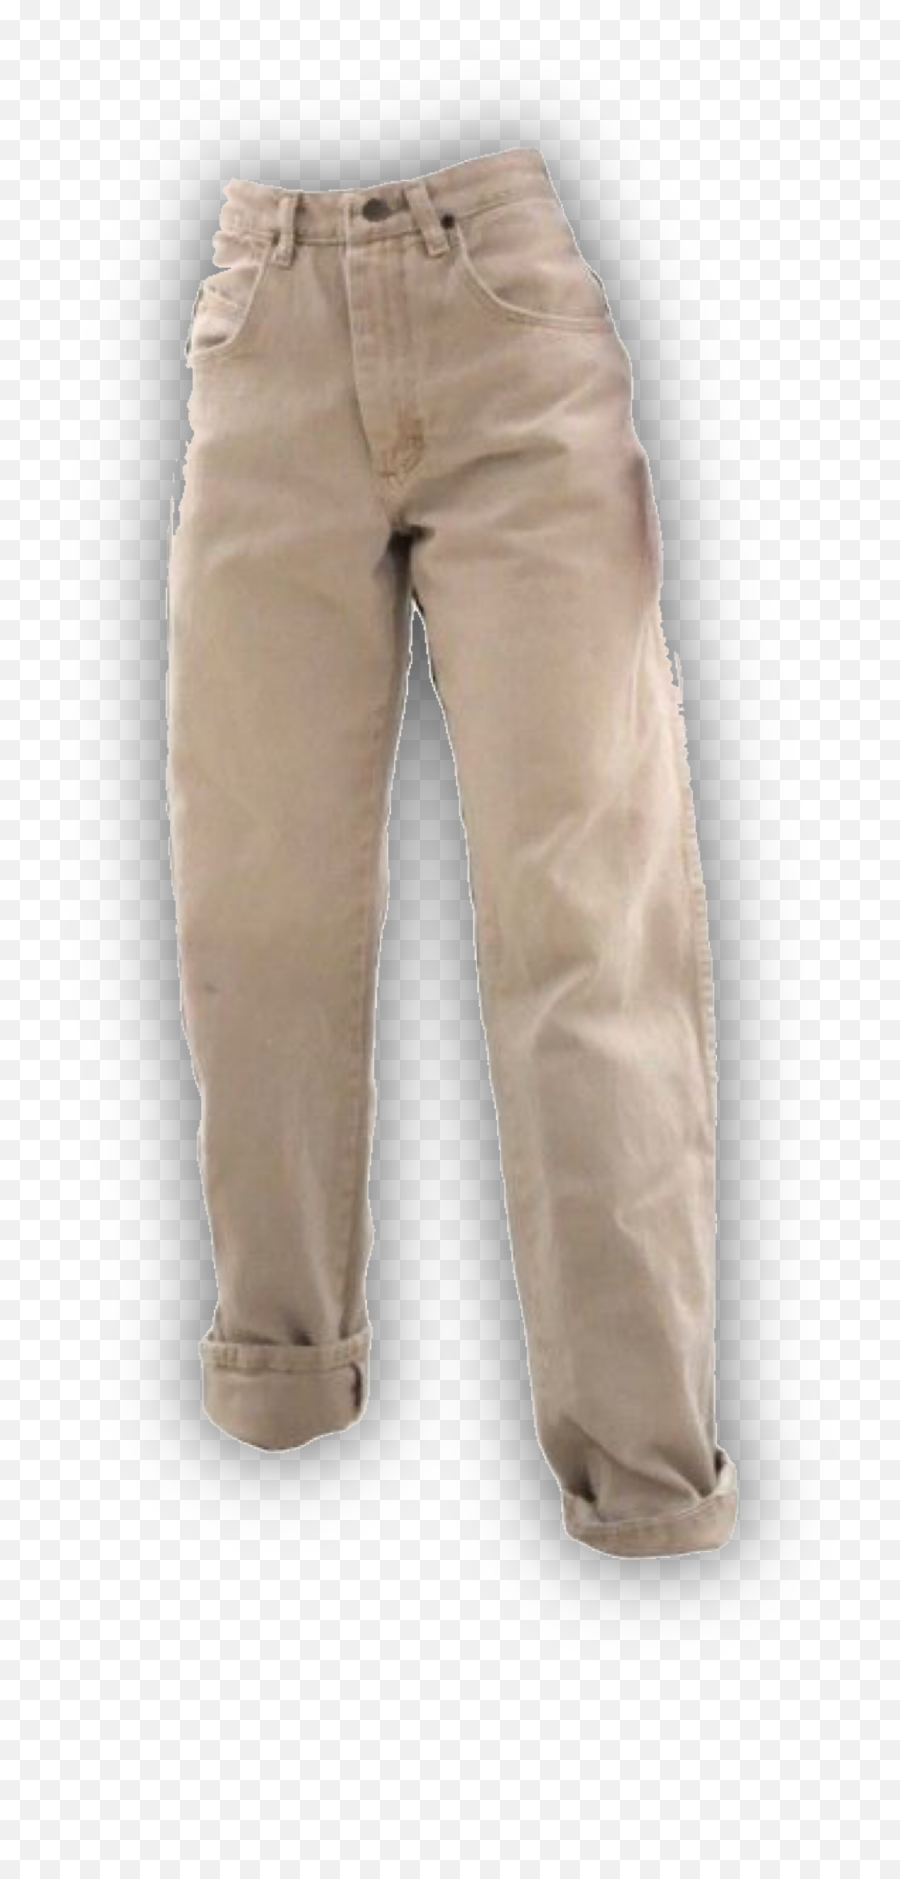 Jeans Pants Bottoms Fashion Clothes Sticker By Bub - Khaki Pants Emoji,Emoji Pants